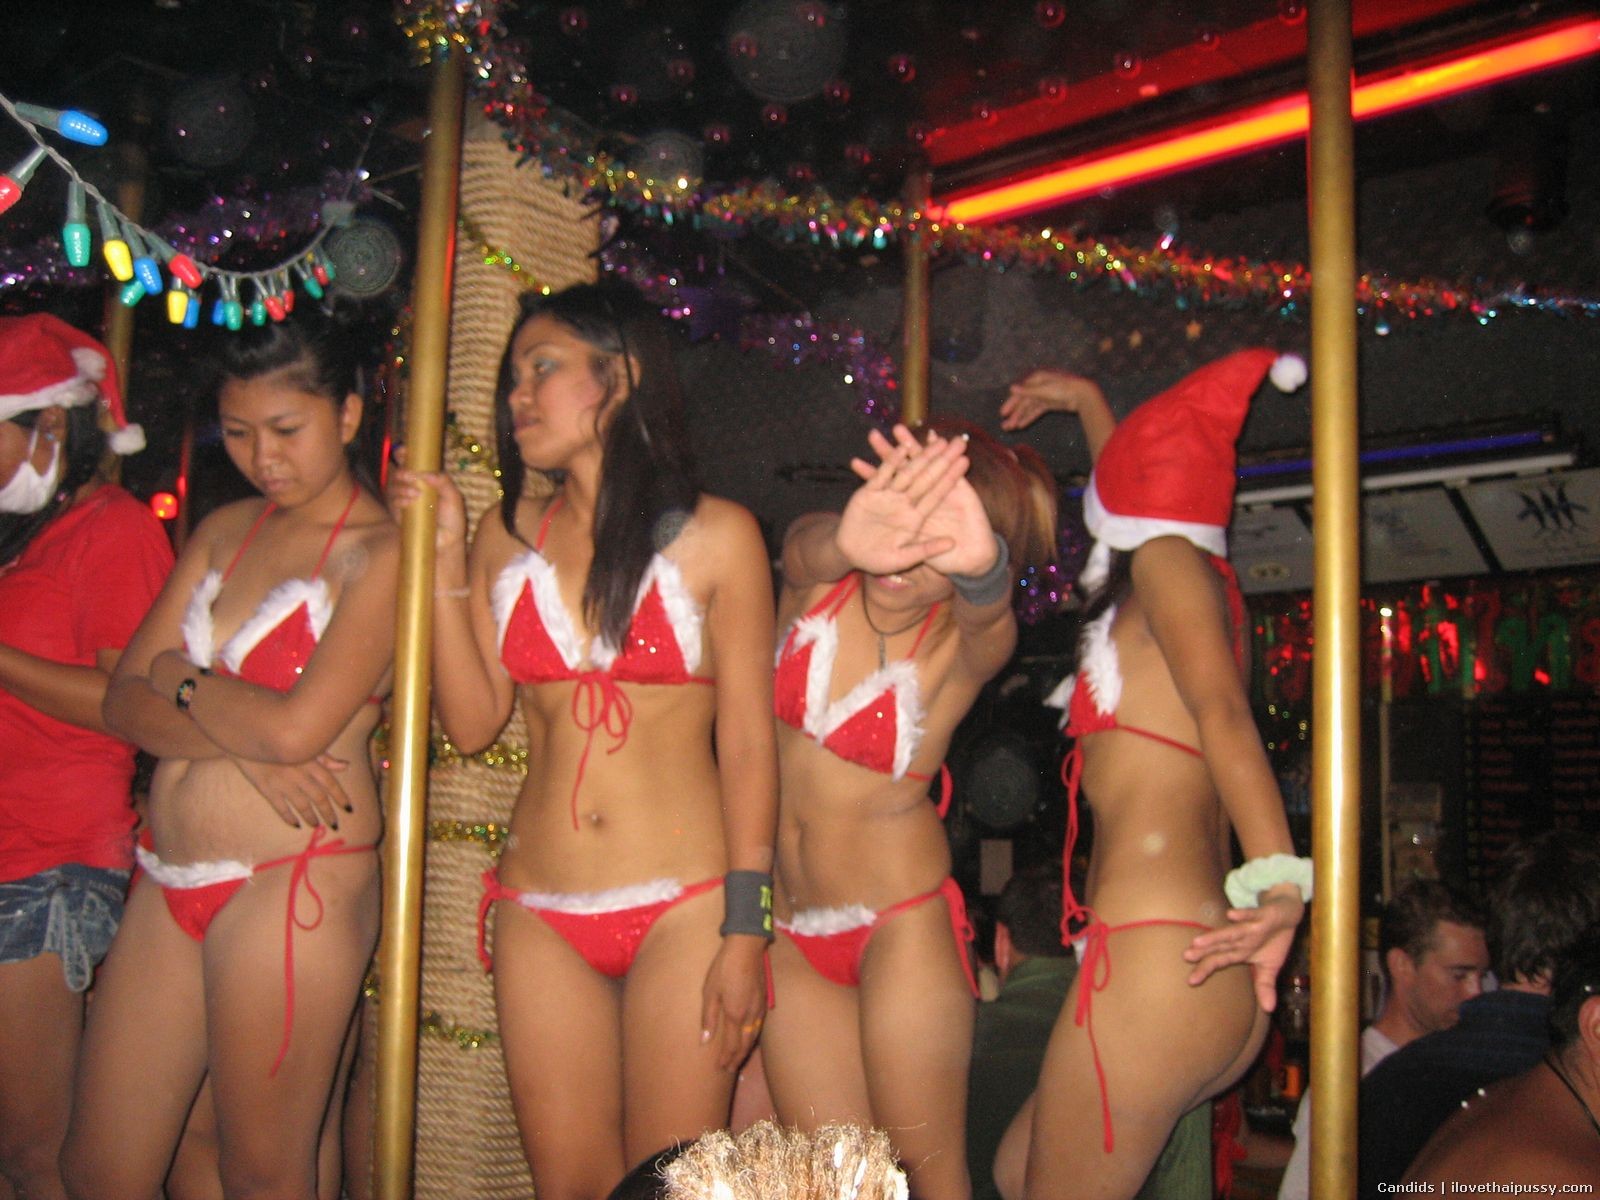 Salope thaïlandaise chaude de Bangkok baisée à nu par un touriste sexuel, pute asiatique
 #67671754